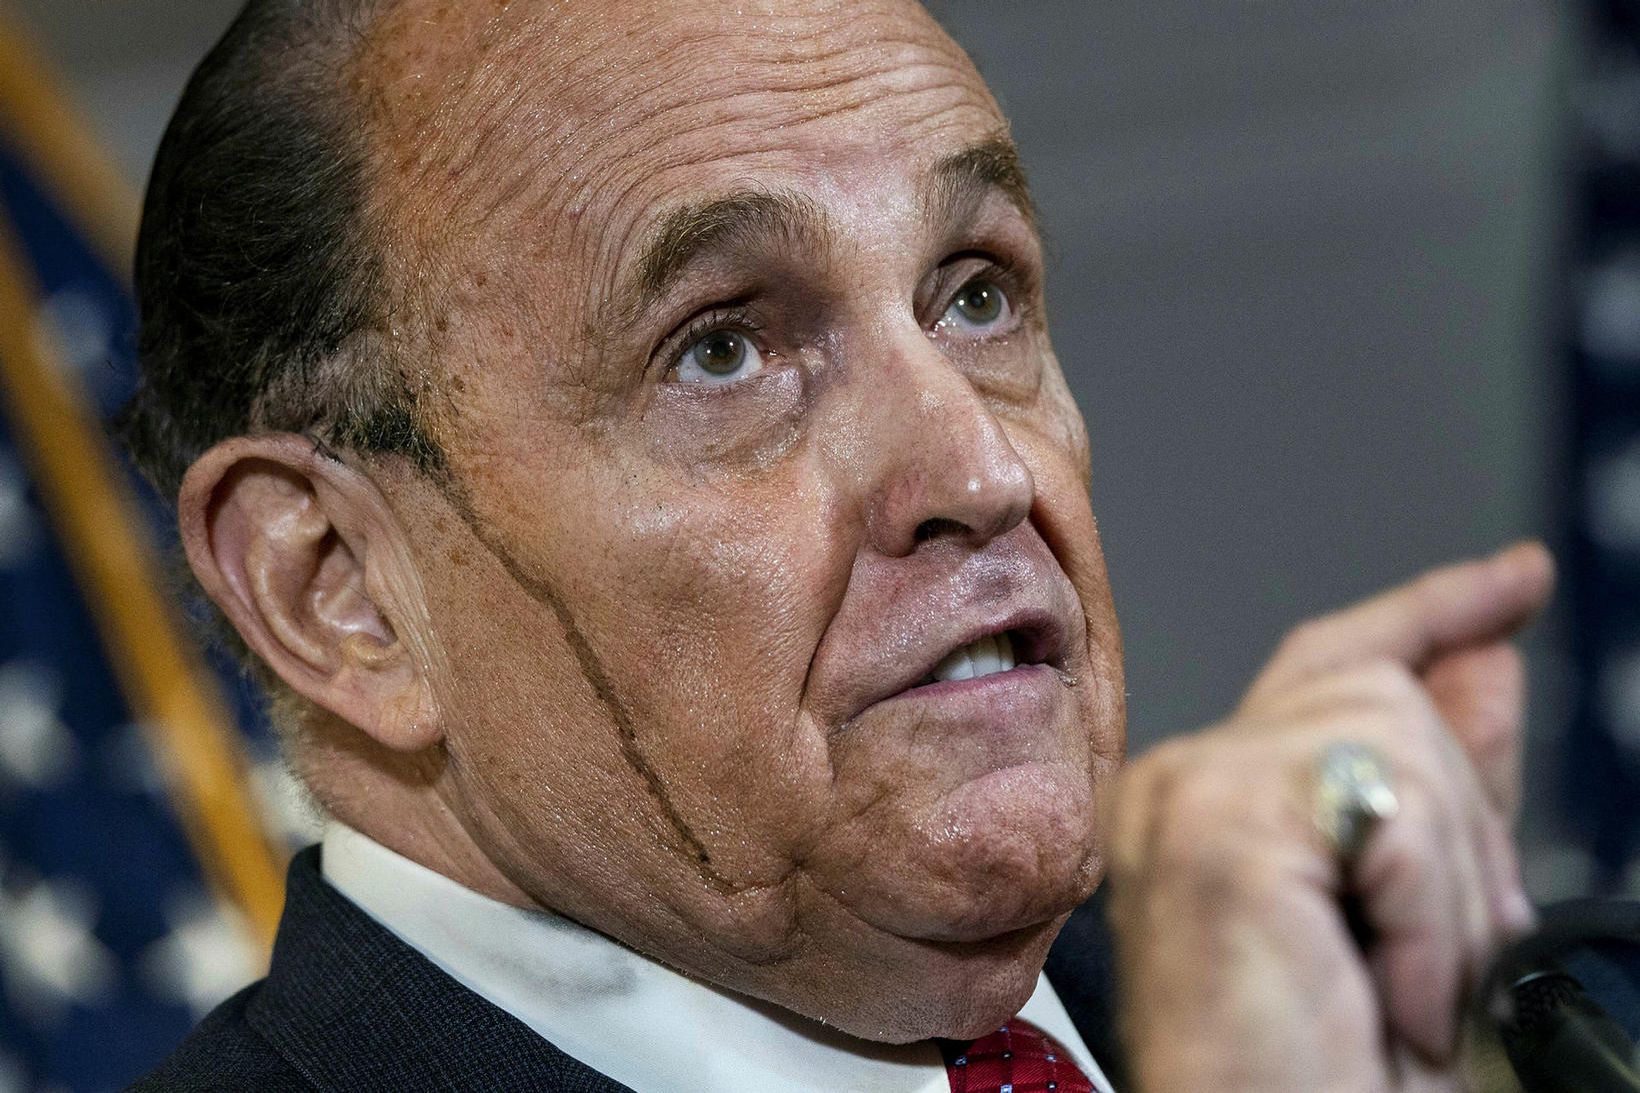 Rudy Giuliani hefur verið sviptur lögmannsréttindum sínum tímabundið.